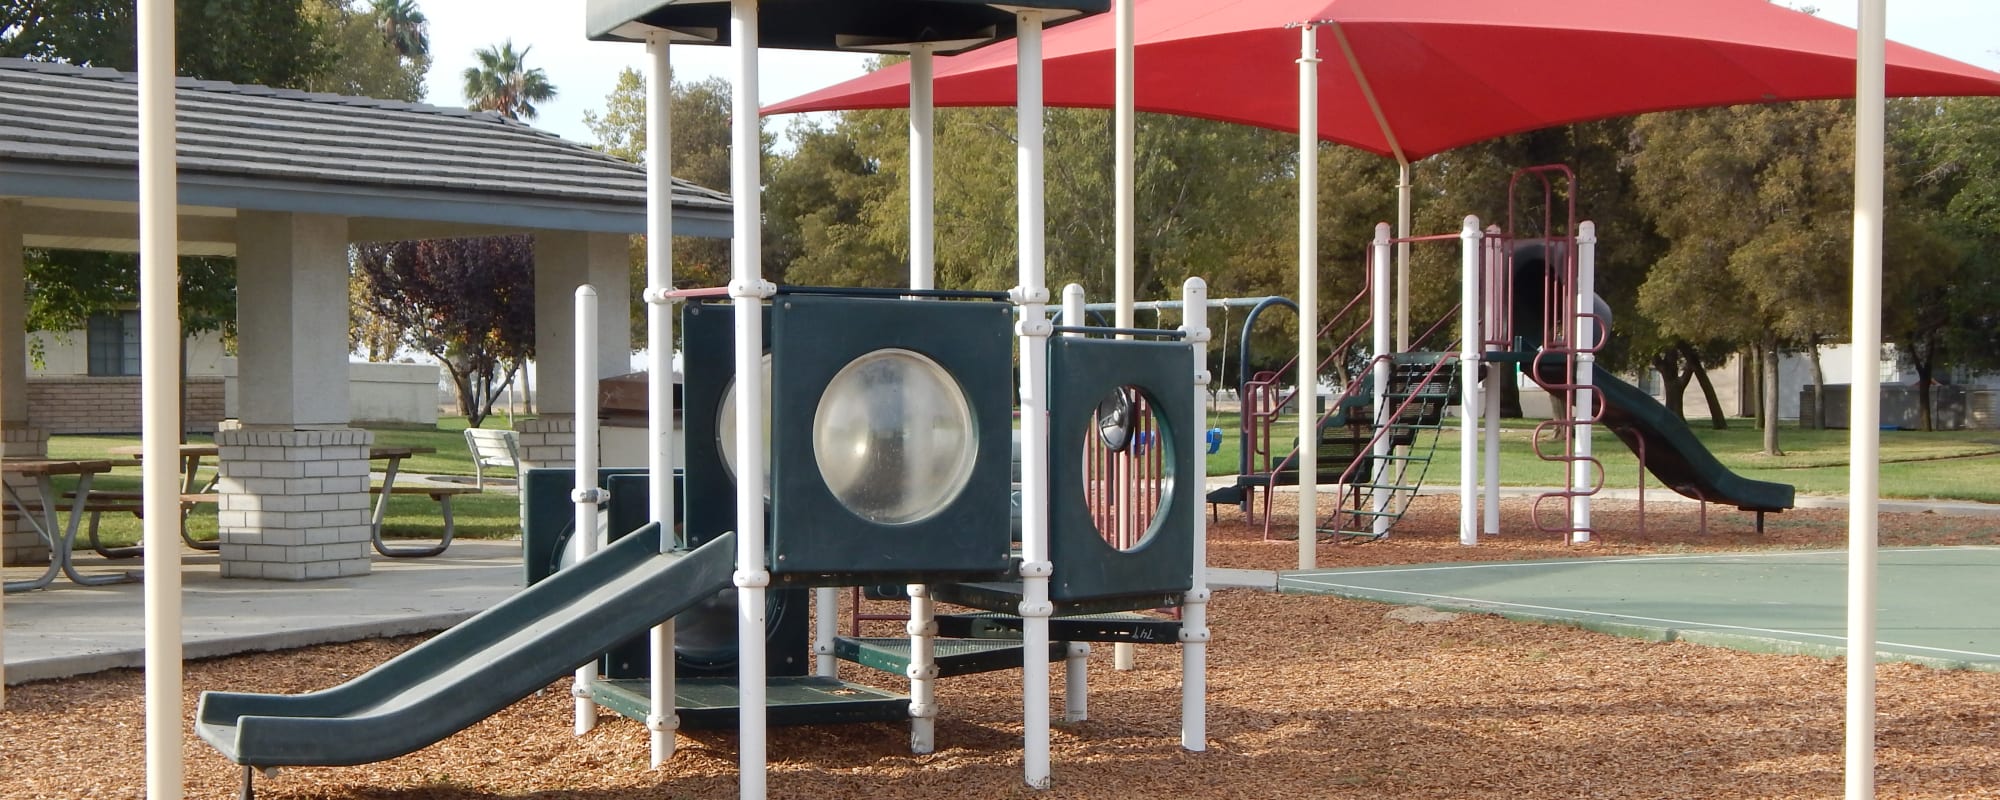 Play area park at Carl Vinson Park in Lemoore, California